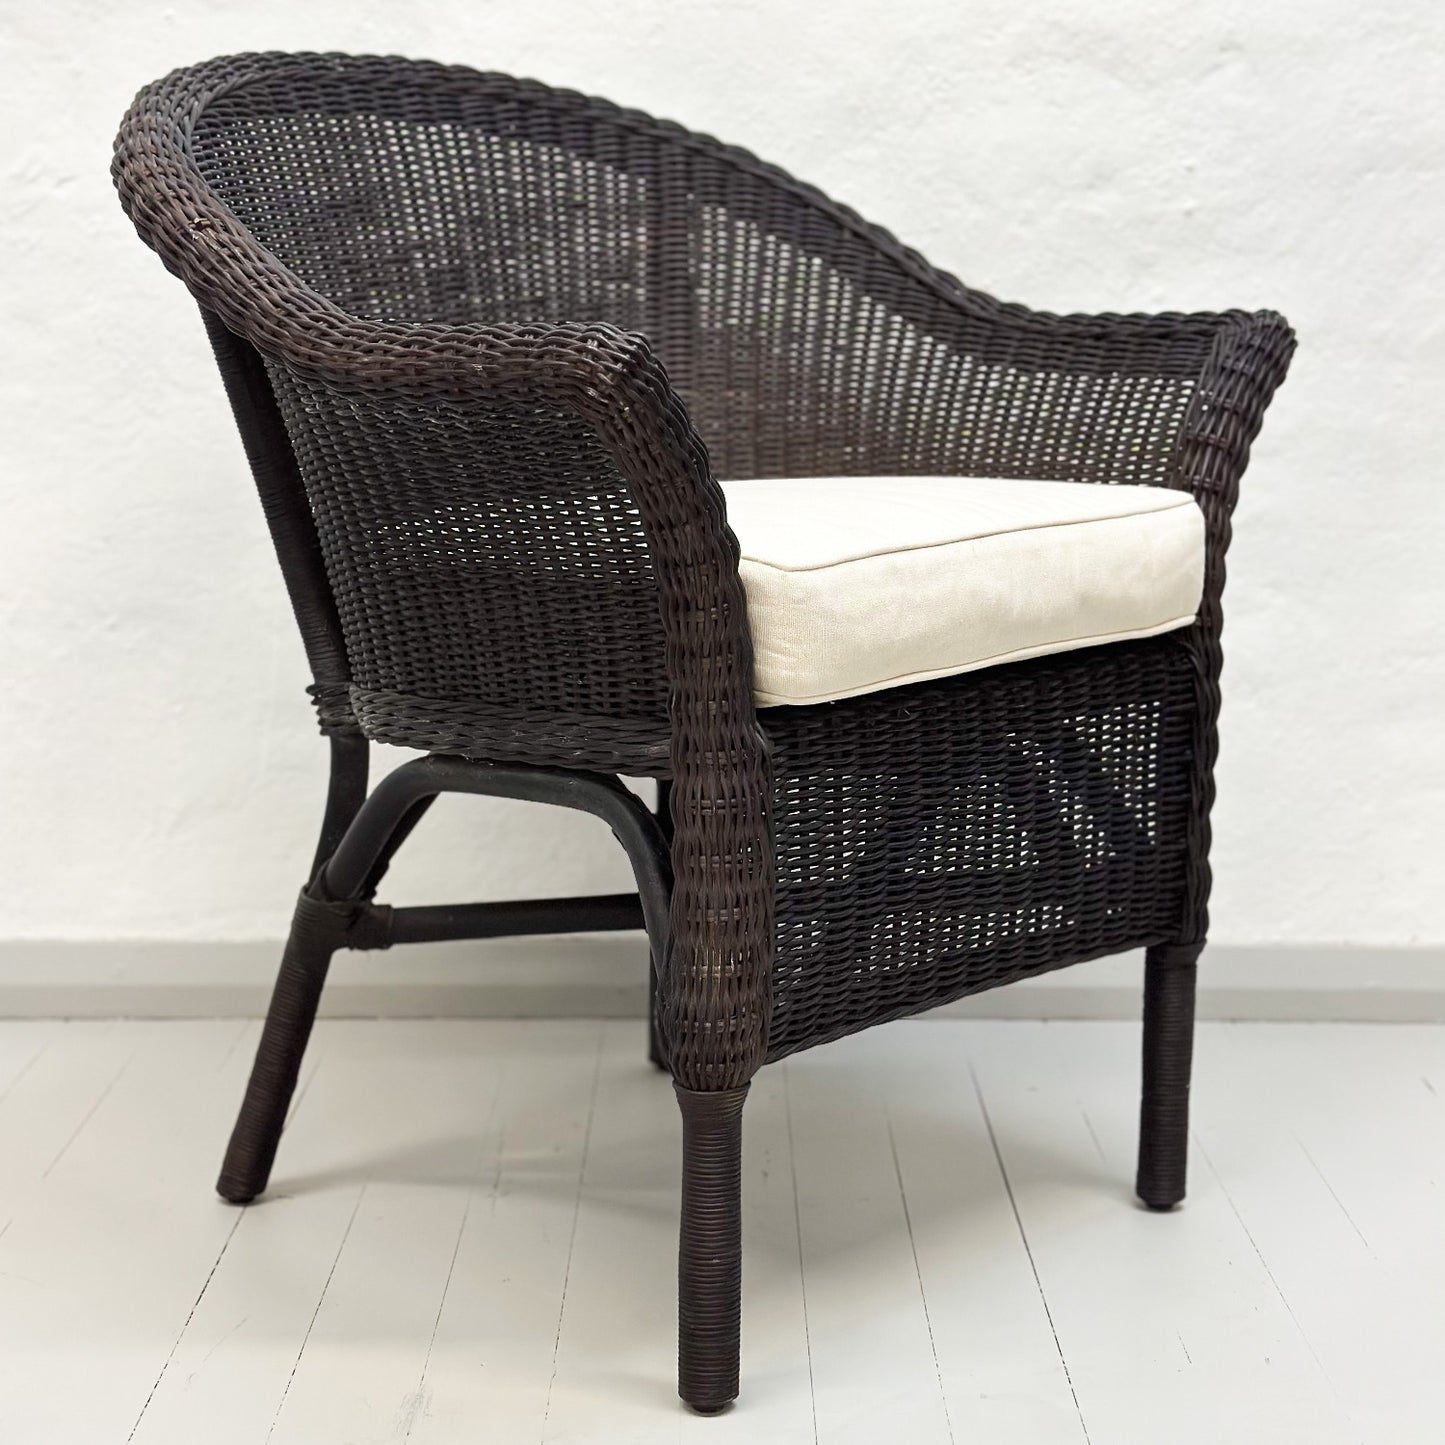 Rattan Tamarind Chair with Cushion